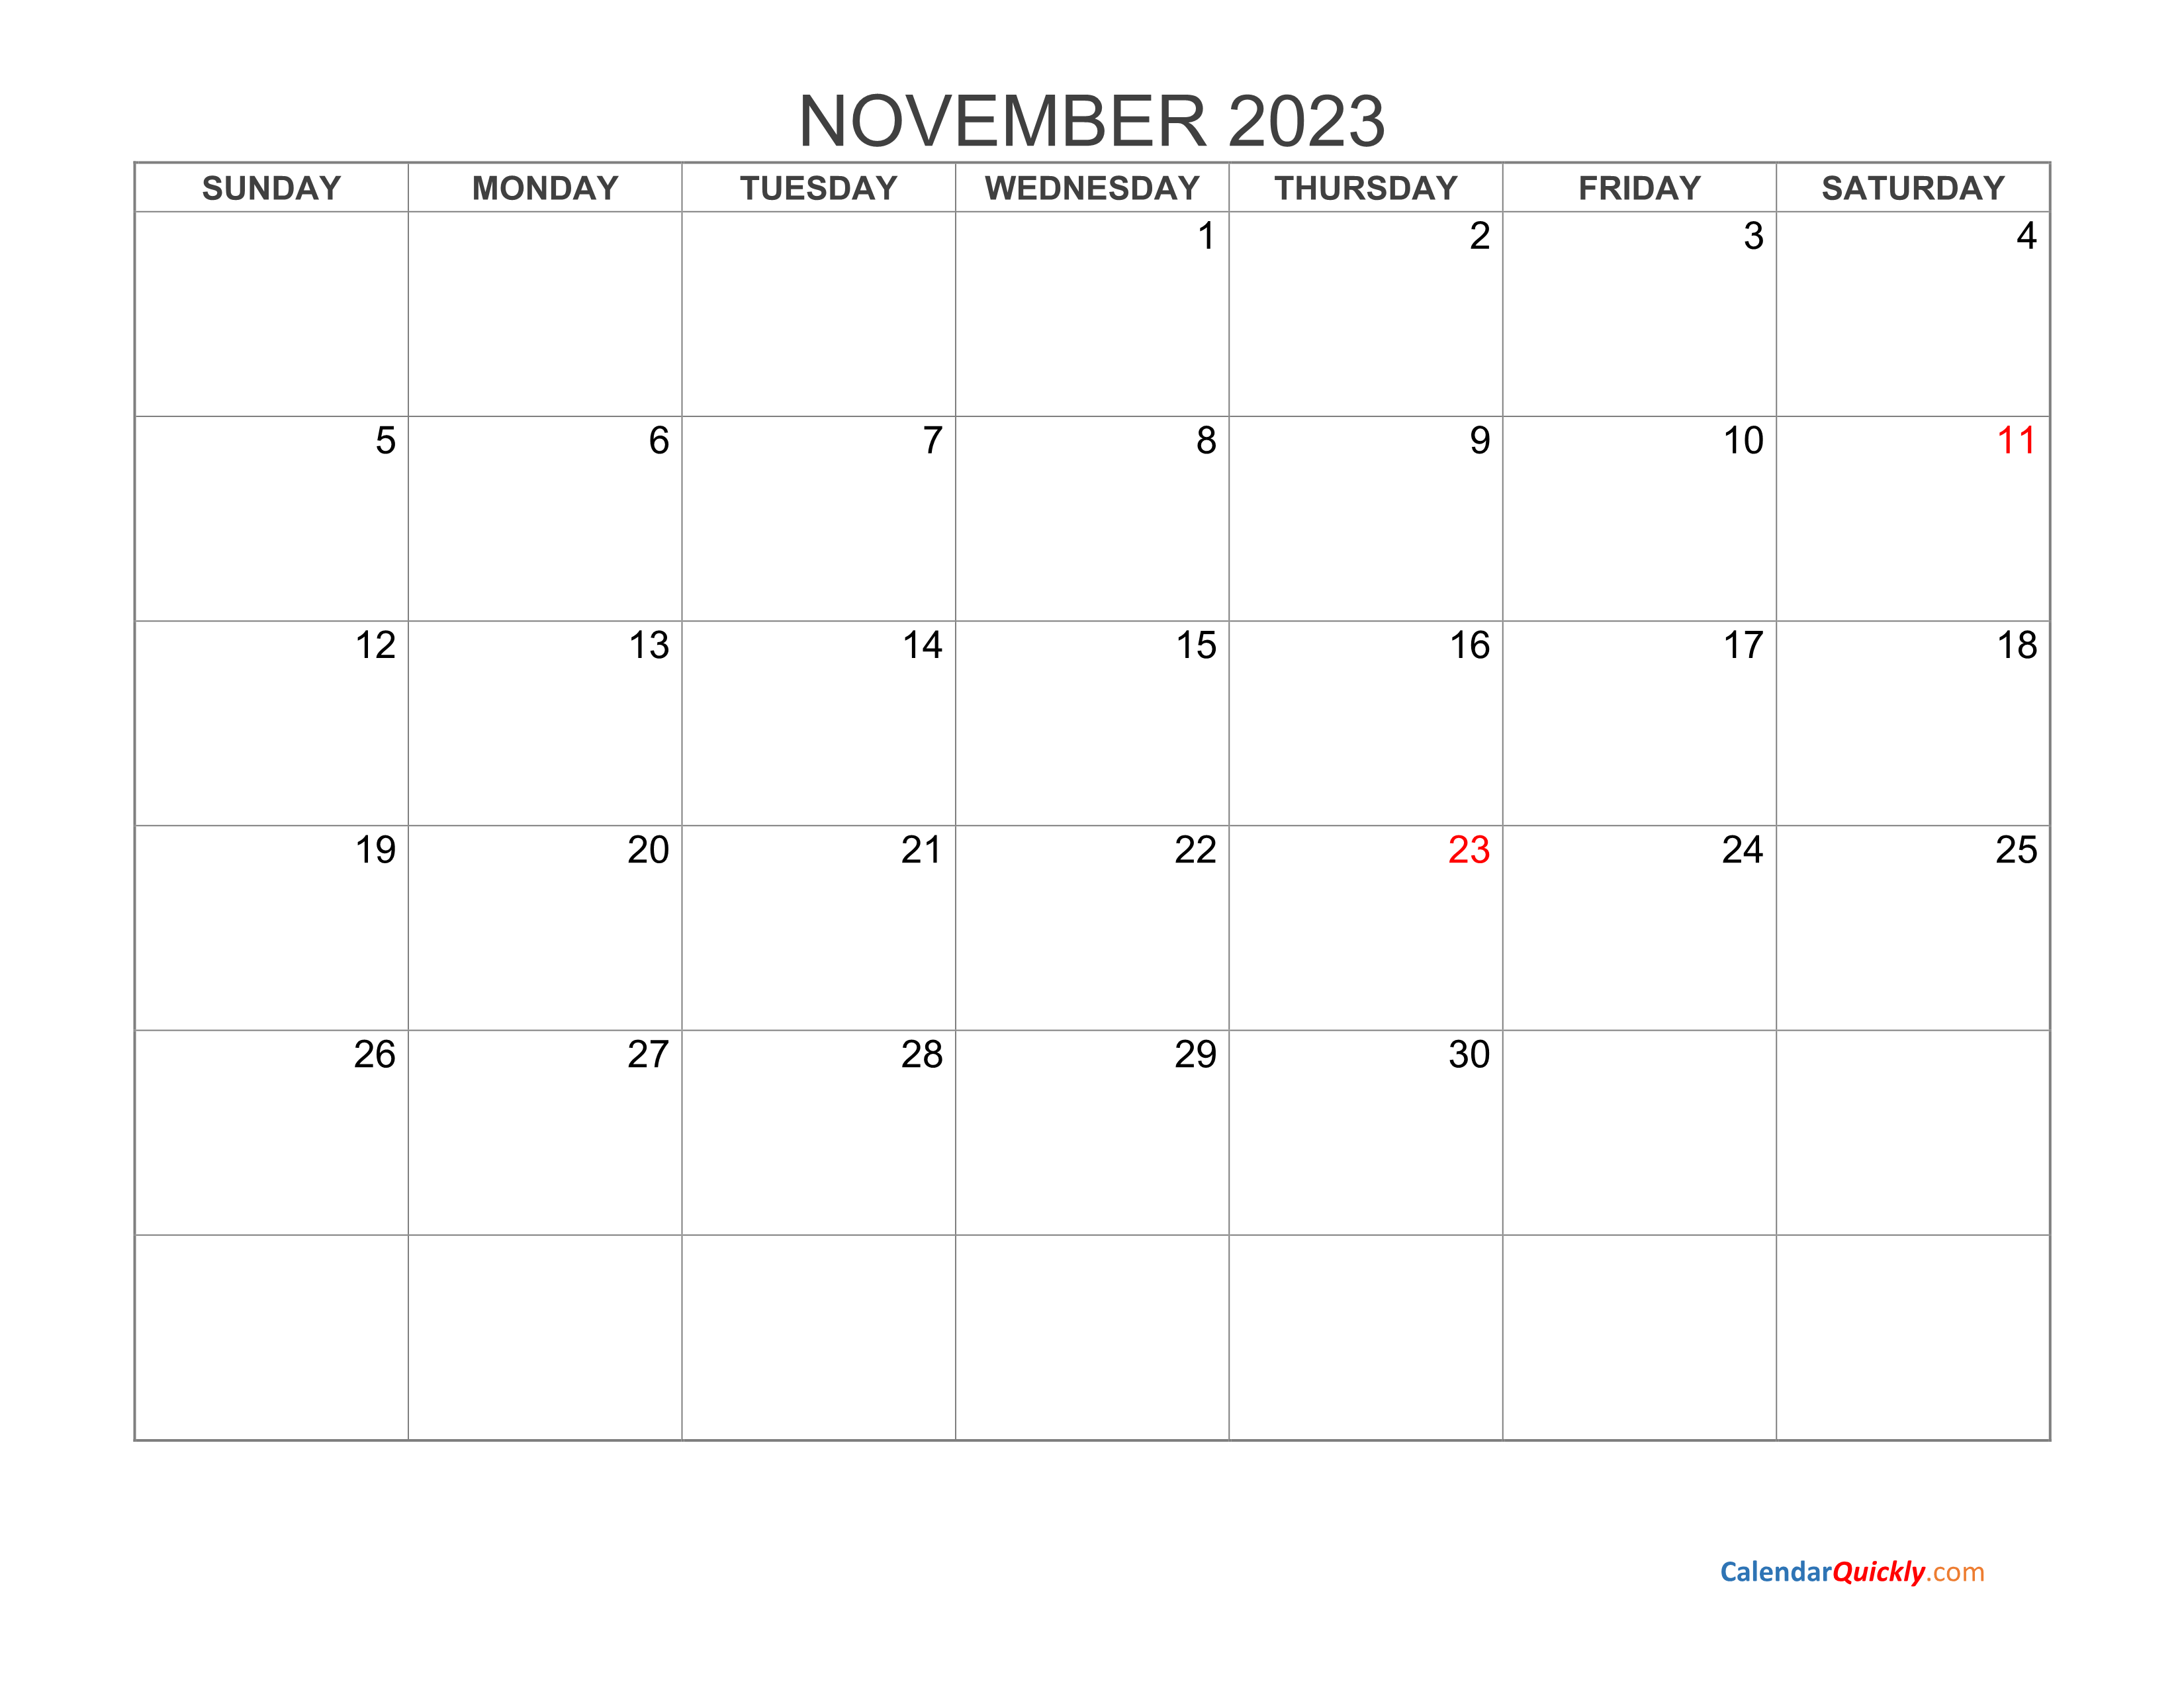 november-2023-blank-calendar-calendar-quickly